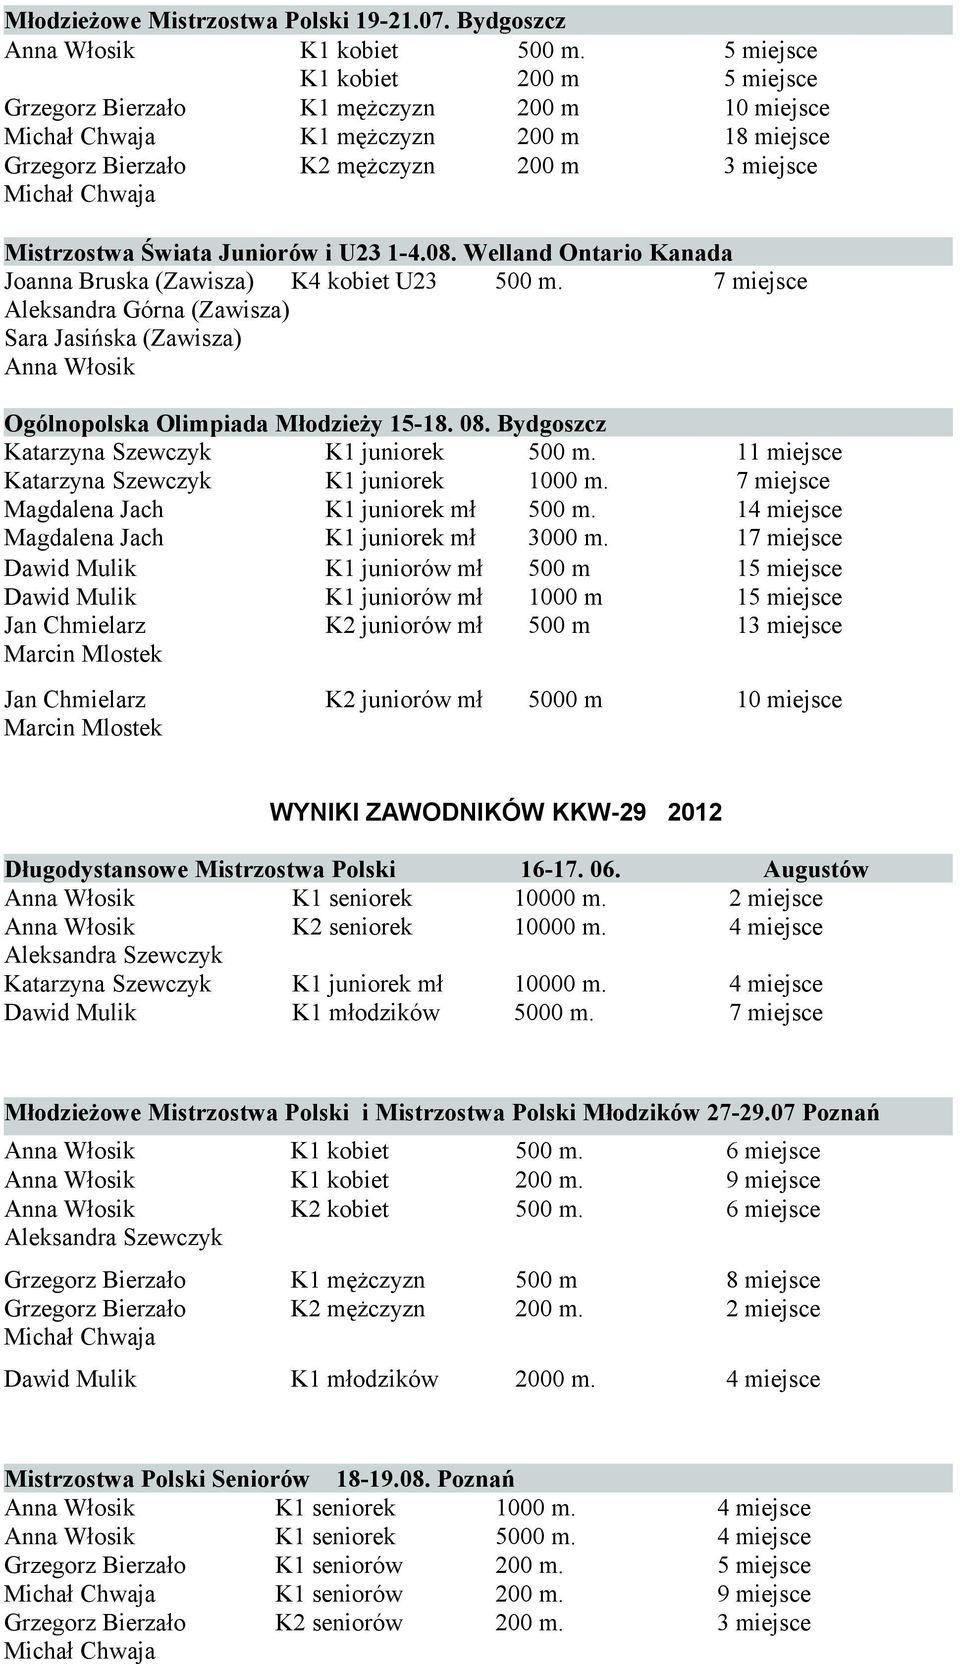 K1 juniorów mł K1 juniorów mł 1000 m Marcin Mlostek Marcin Mlostek 1 1 1 1 1 5000 m 10 miejsce WYNIKI ZAWODNIKÓW KKW-29 2012 Długodystansowe Mistrzostwa Polski K2 seniorek K1